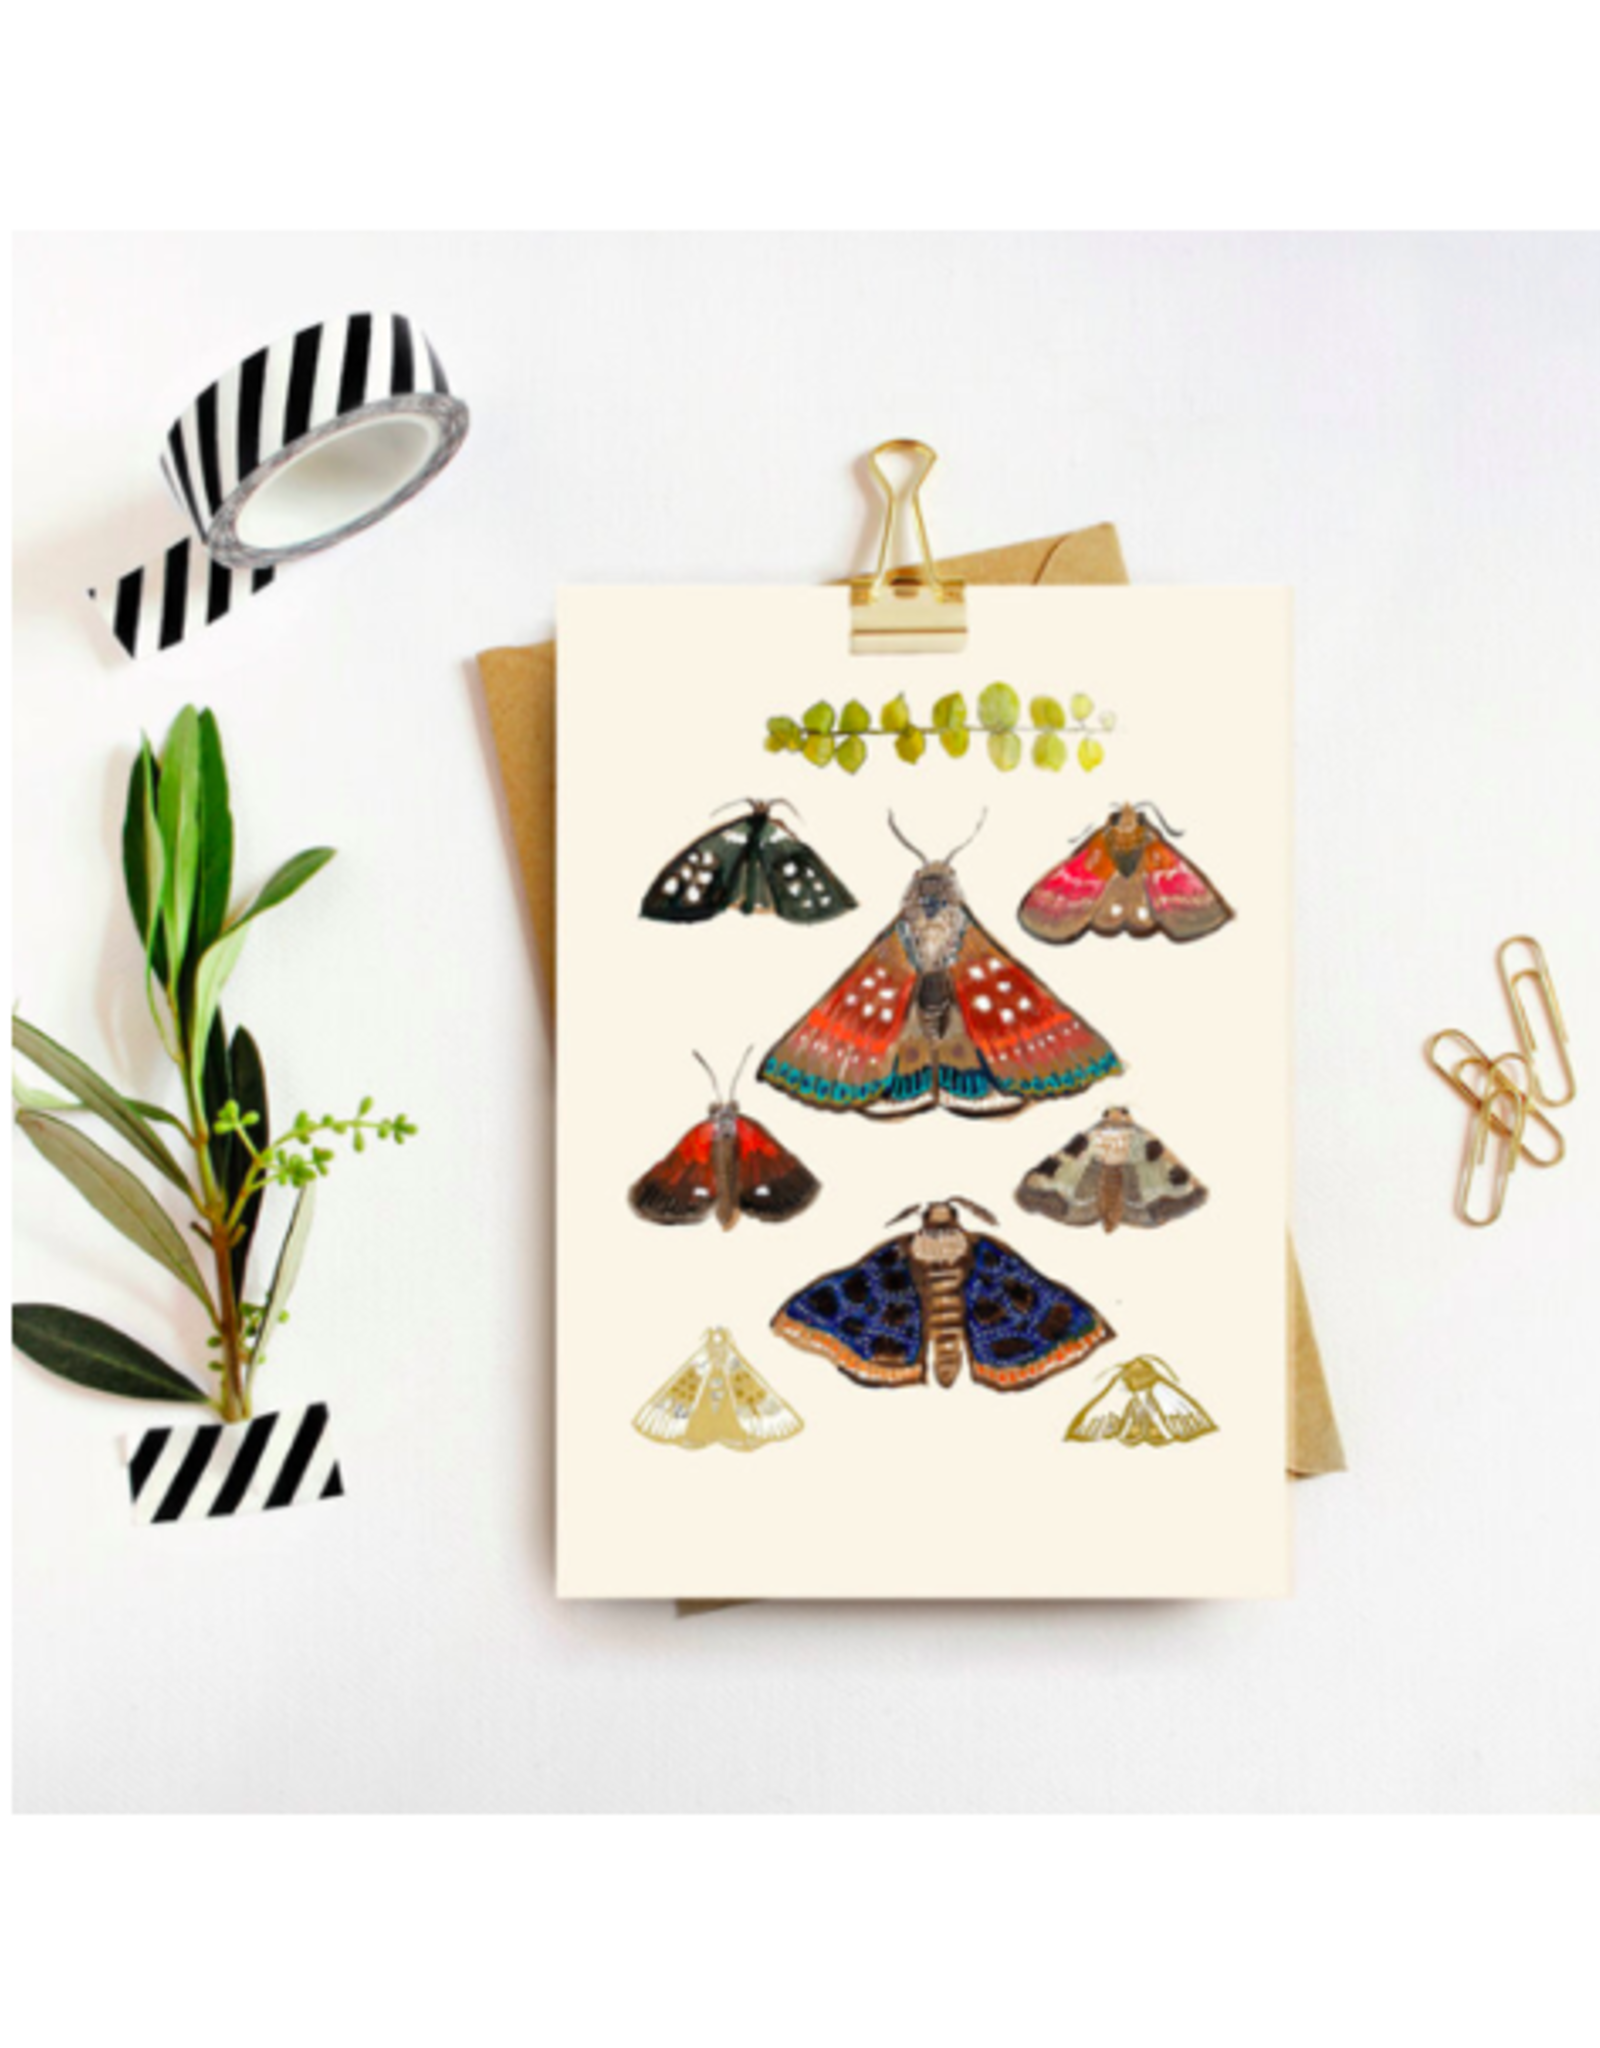 TIMCo Briana Corr Scott - Card / Moths, Cream, 4 x 6"